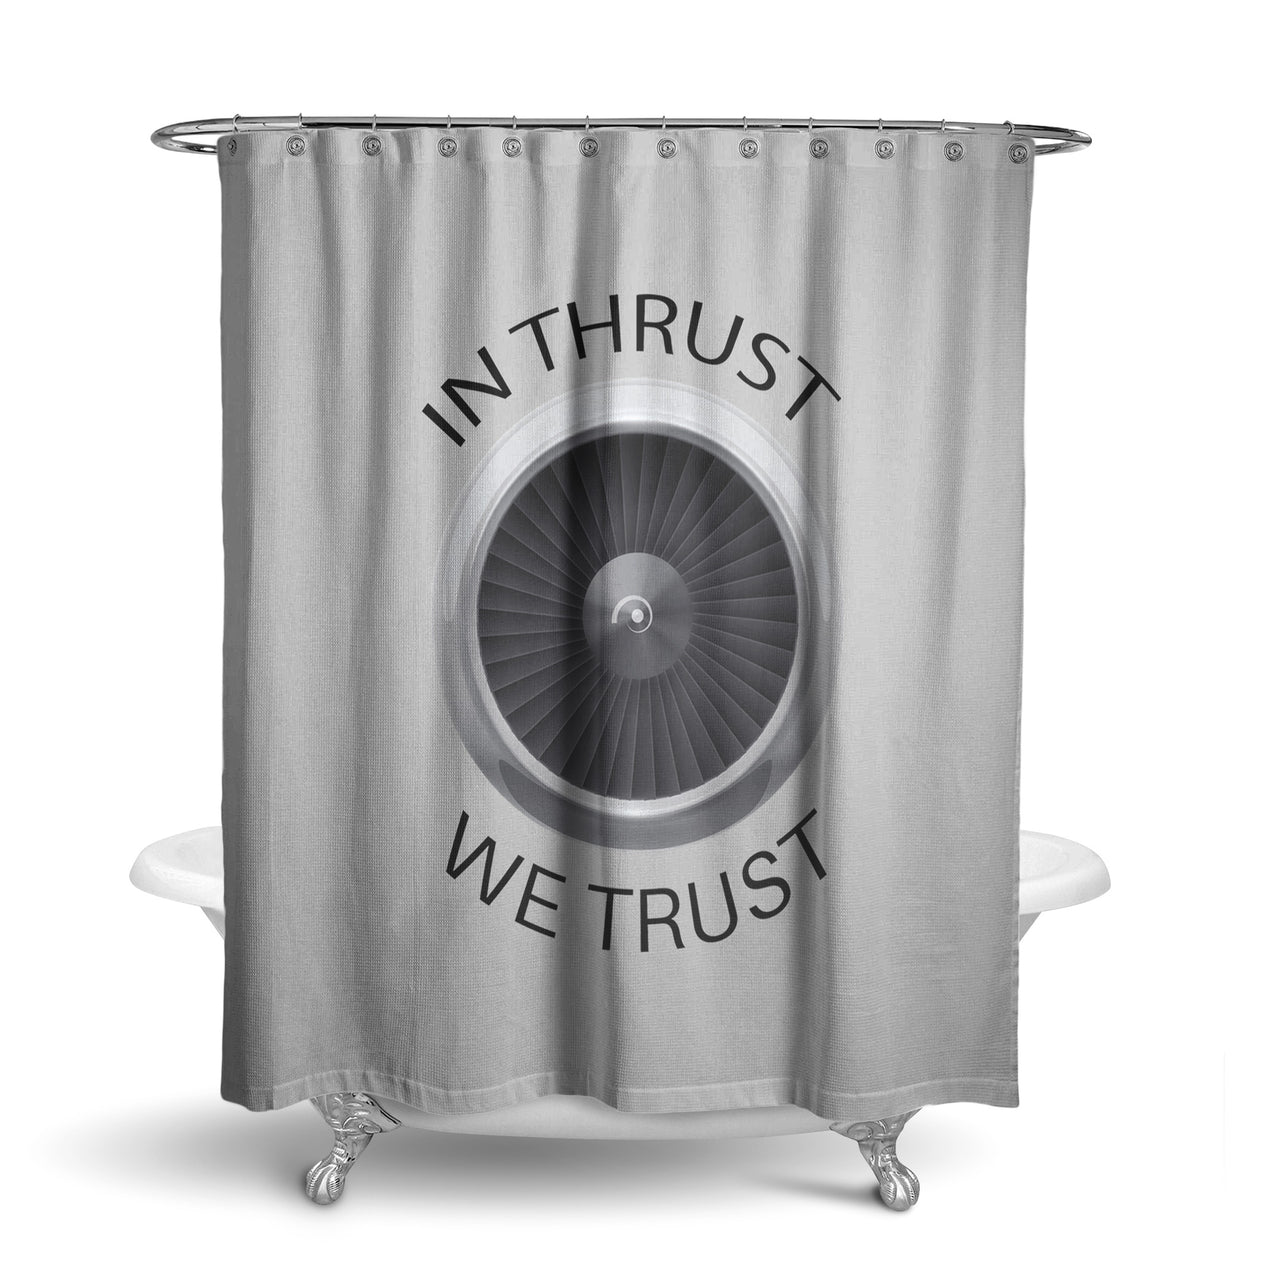 In Thrust We Trust Designed Shower Curtains